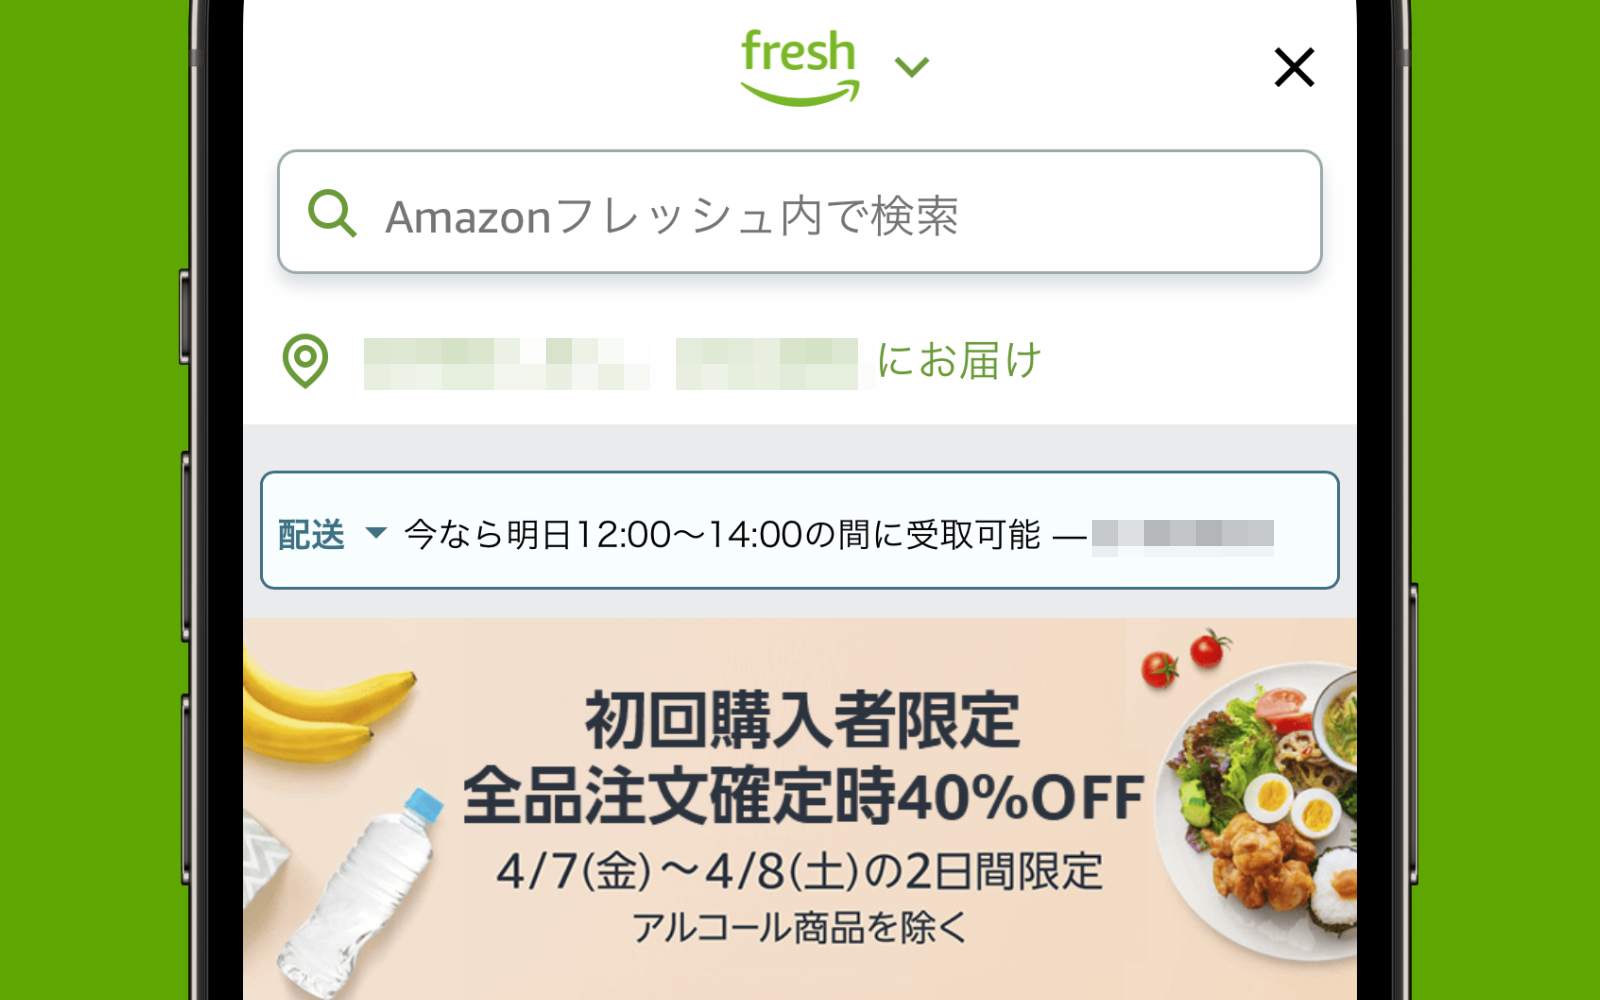 Amazon-Fresh-is-having-an-amazing-sale.jpg